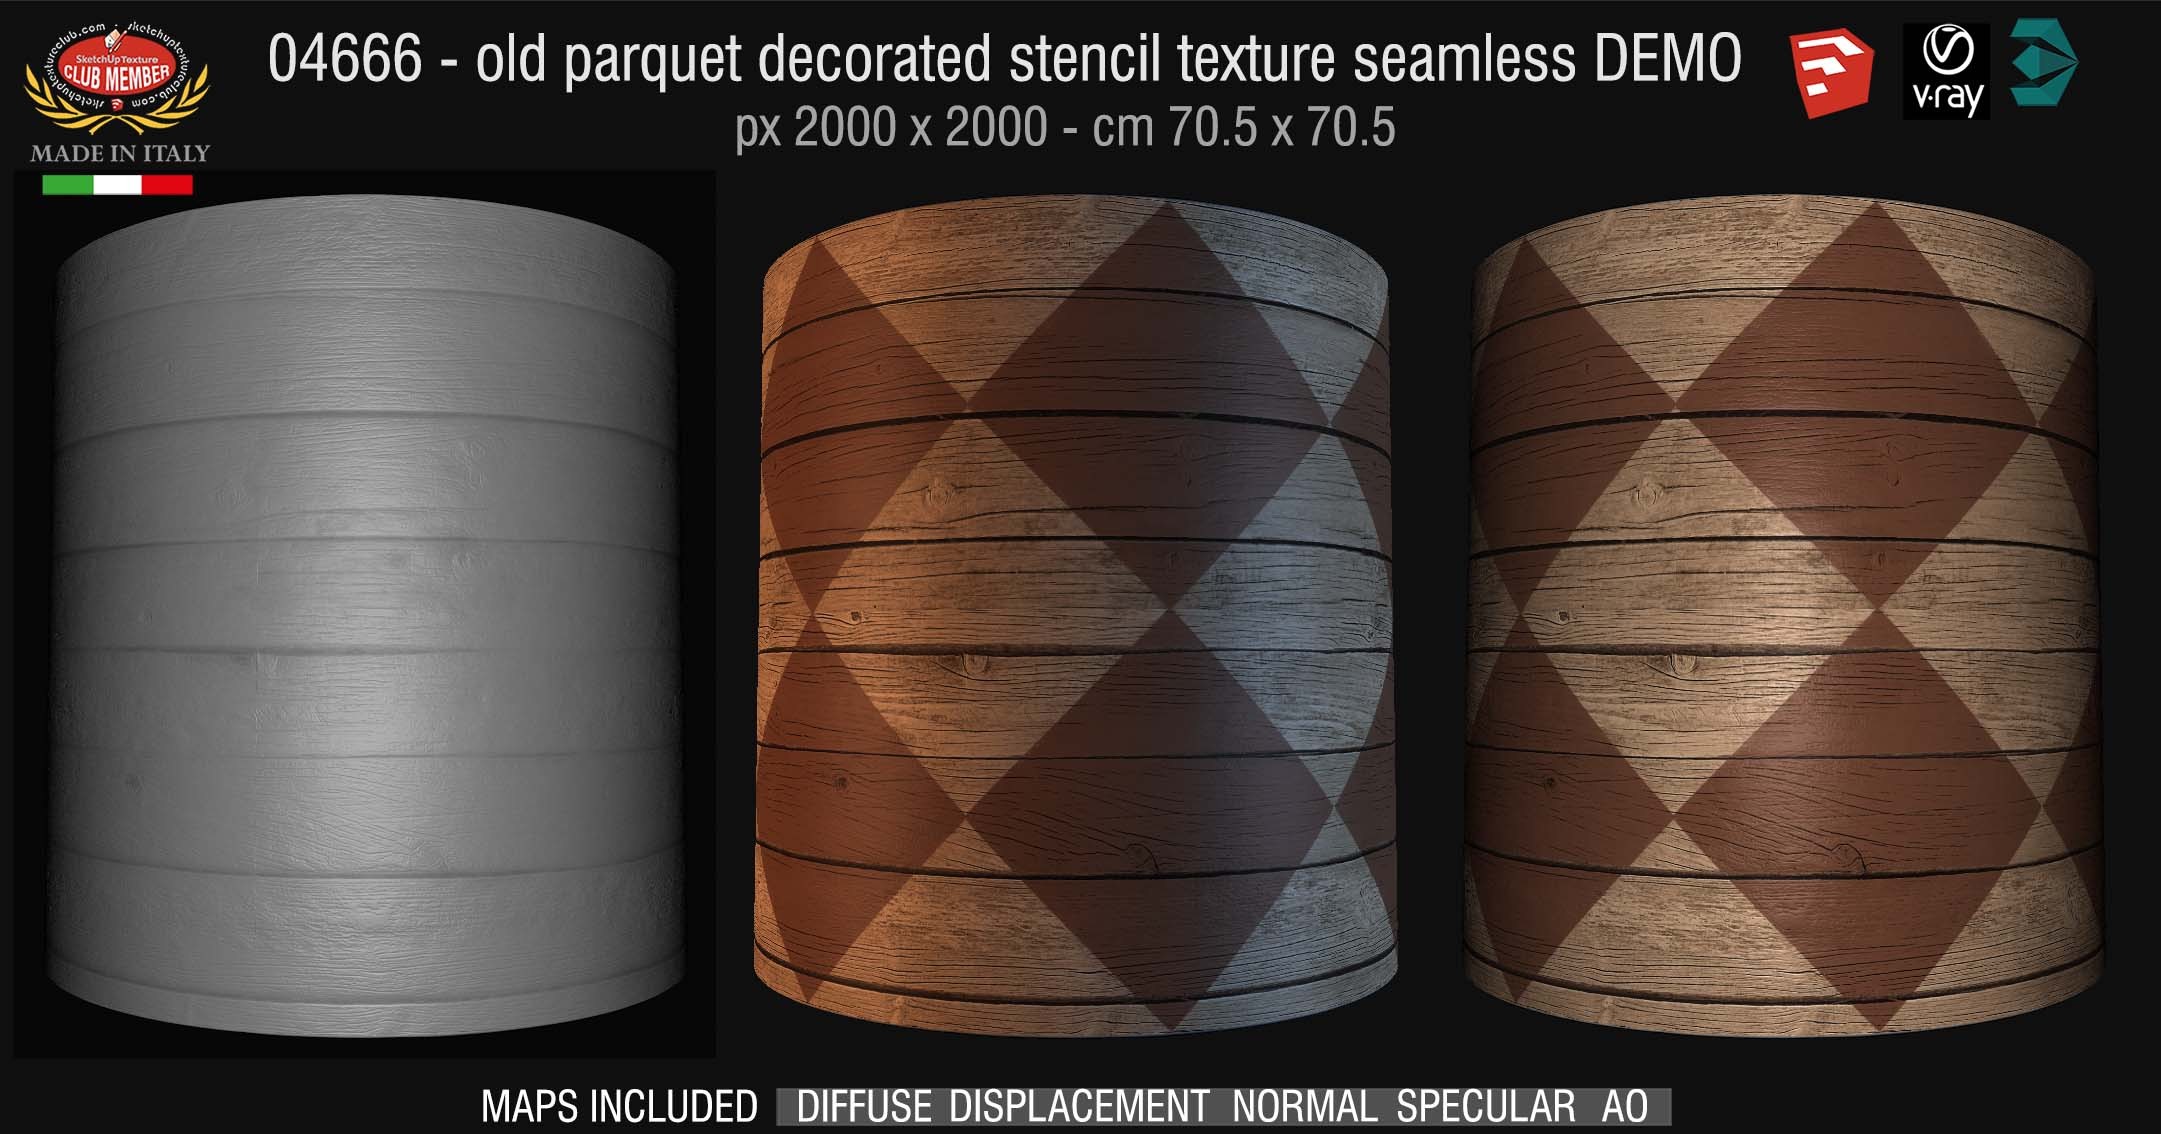 04667 HR Parquet decorated stencil texture seamless + maps DEMO